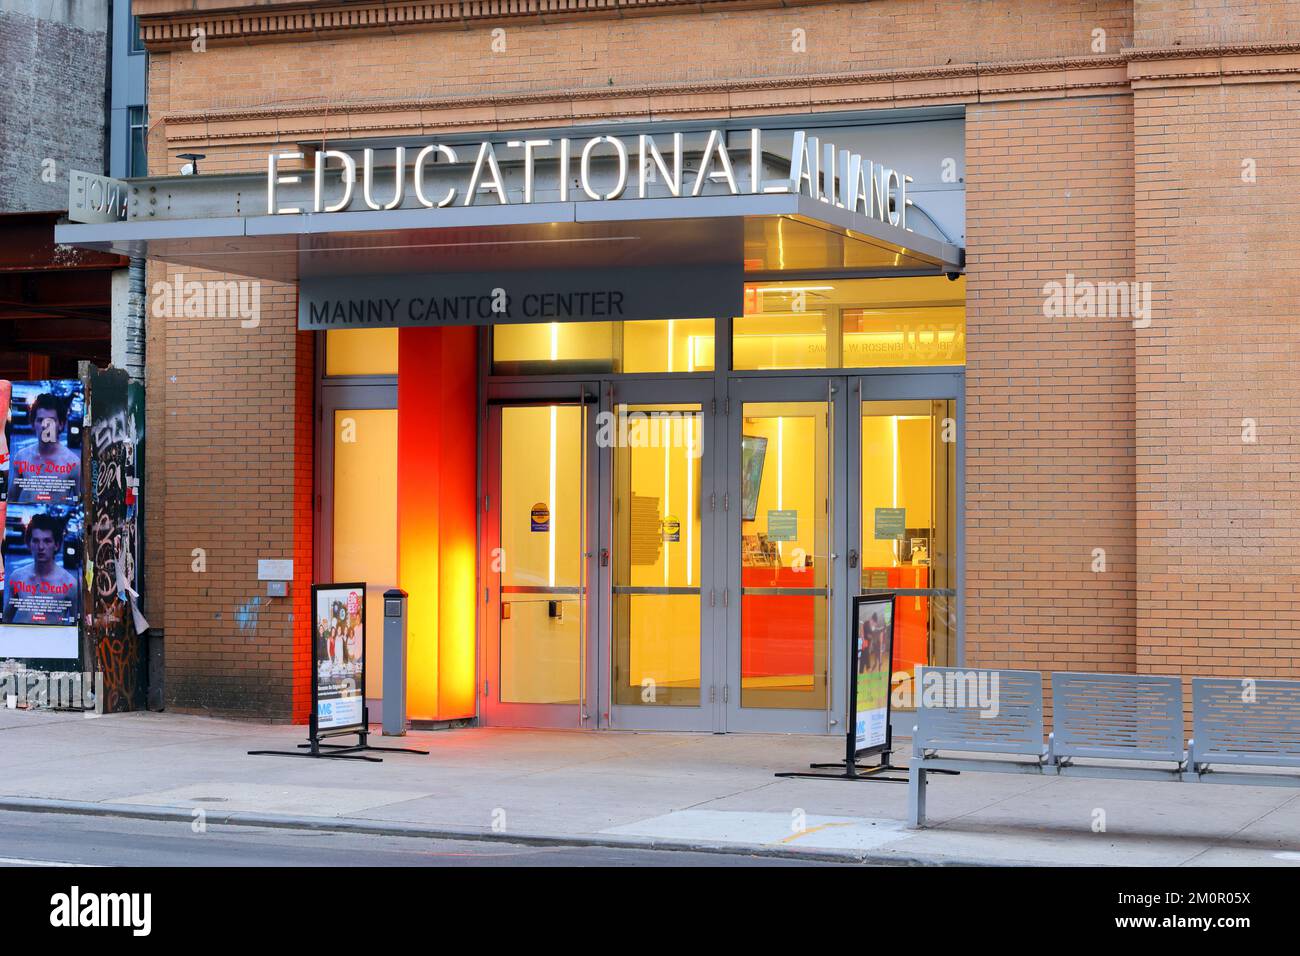 Manny Cantor Center @ Educational Alliance, 197 e Broadway, New York, NYC storefront foto del centro della comunità a Manhattan Chinatown/Lower East Side Foto Stock